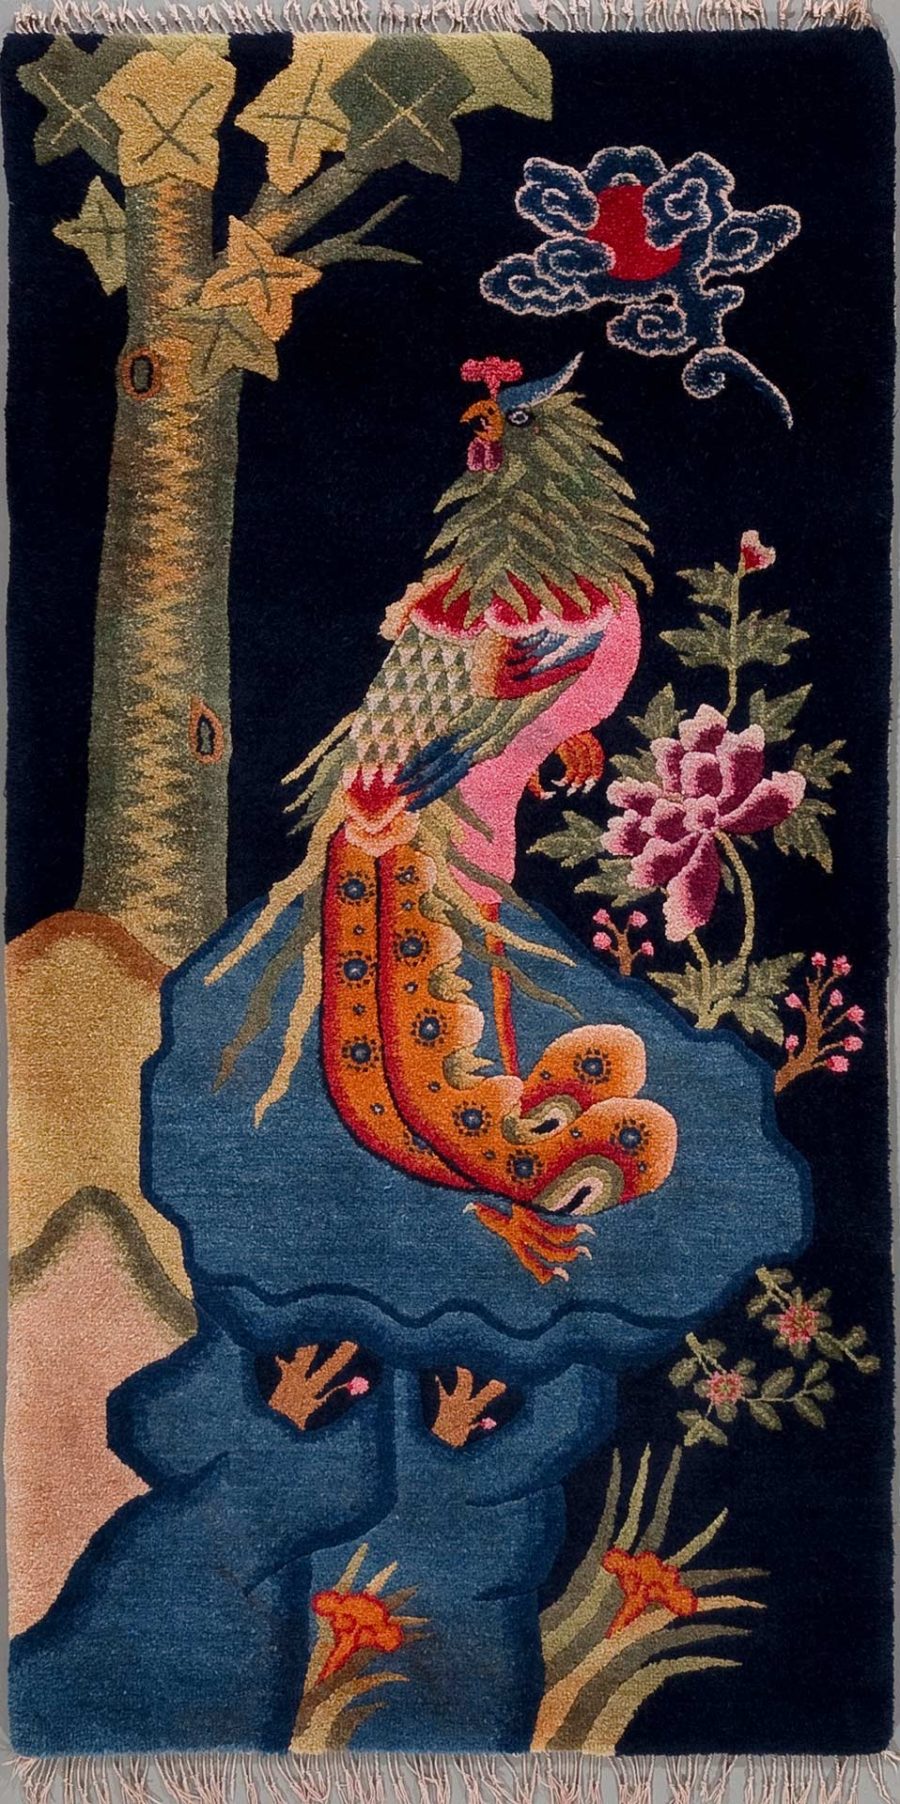 Farbiges Wandteppich-Design mit einem asiatisch anmutenden Drachen in Rottönen mit blauen und gelben Akzenten, der um eine Felsformation gewickelt ist. Darüber eine stilisierte Wolke und umgeben von traditionellen Motiven wie Bäumen und Blumen auf dunklem Hintergrund.